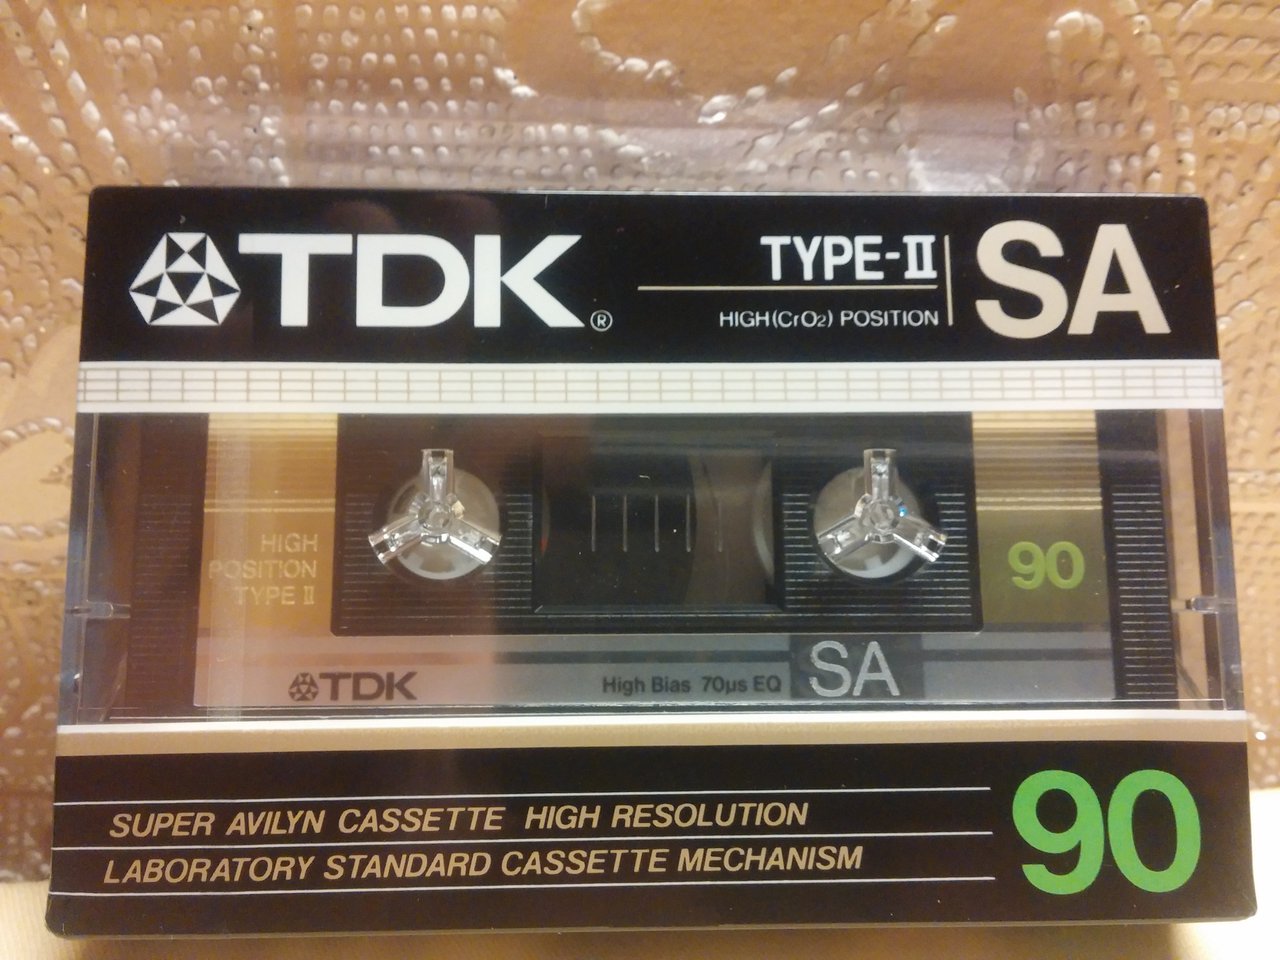  Наборчик новых кассет.